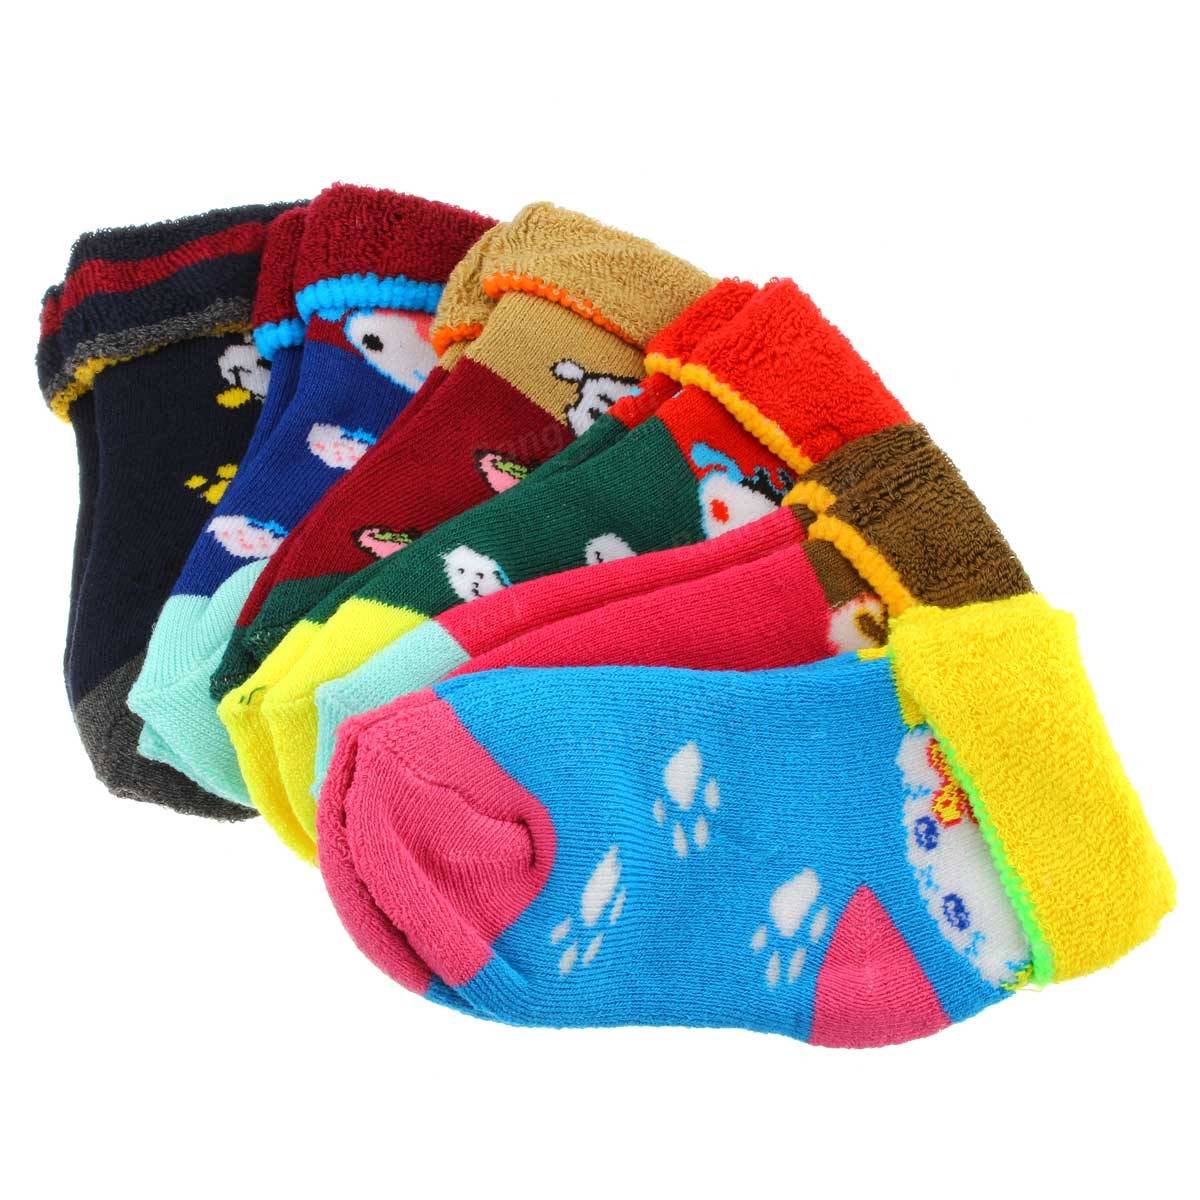 10 pais chaussettes en coton bébé enfant épaississent bas enfant pantoufle antidérapant hiver chaud